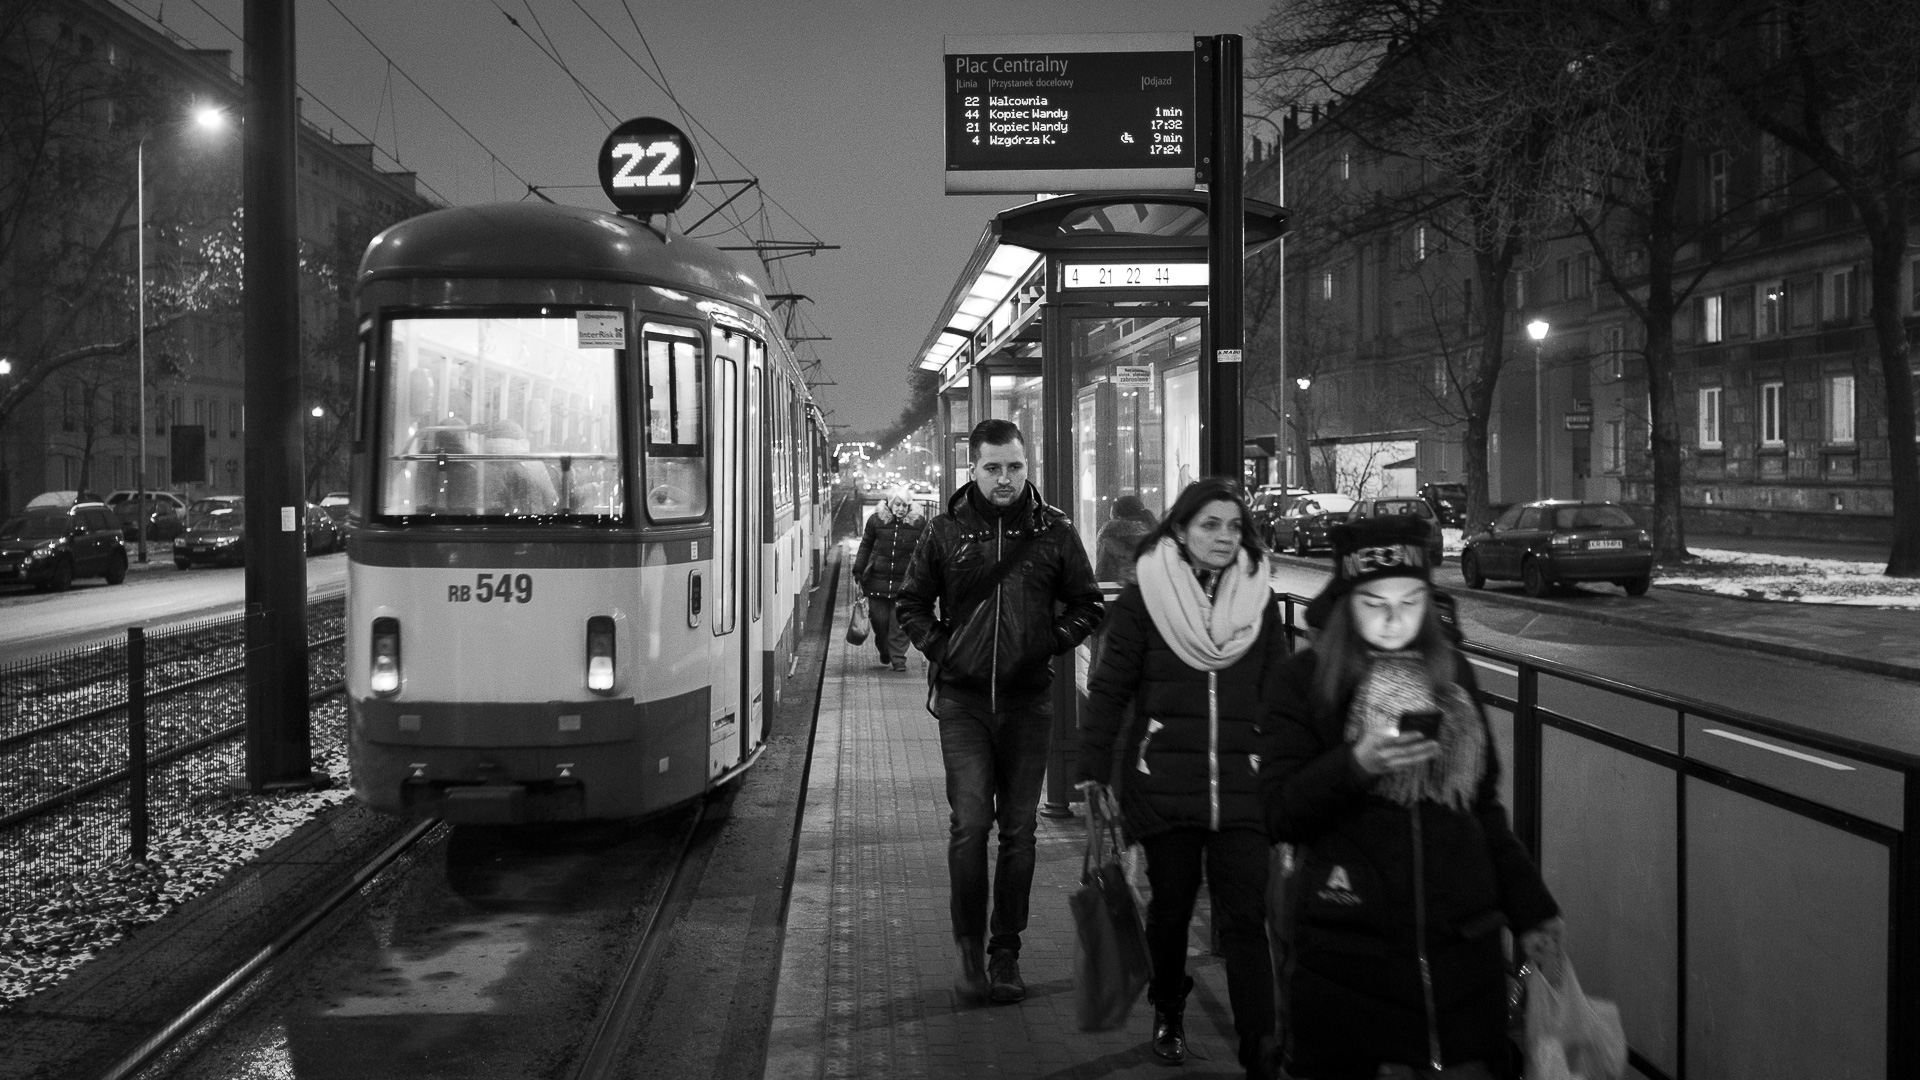 Commuters disembark from a tram in Nowa Huta